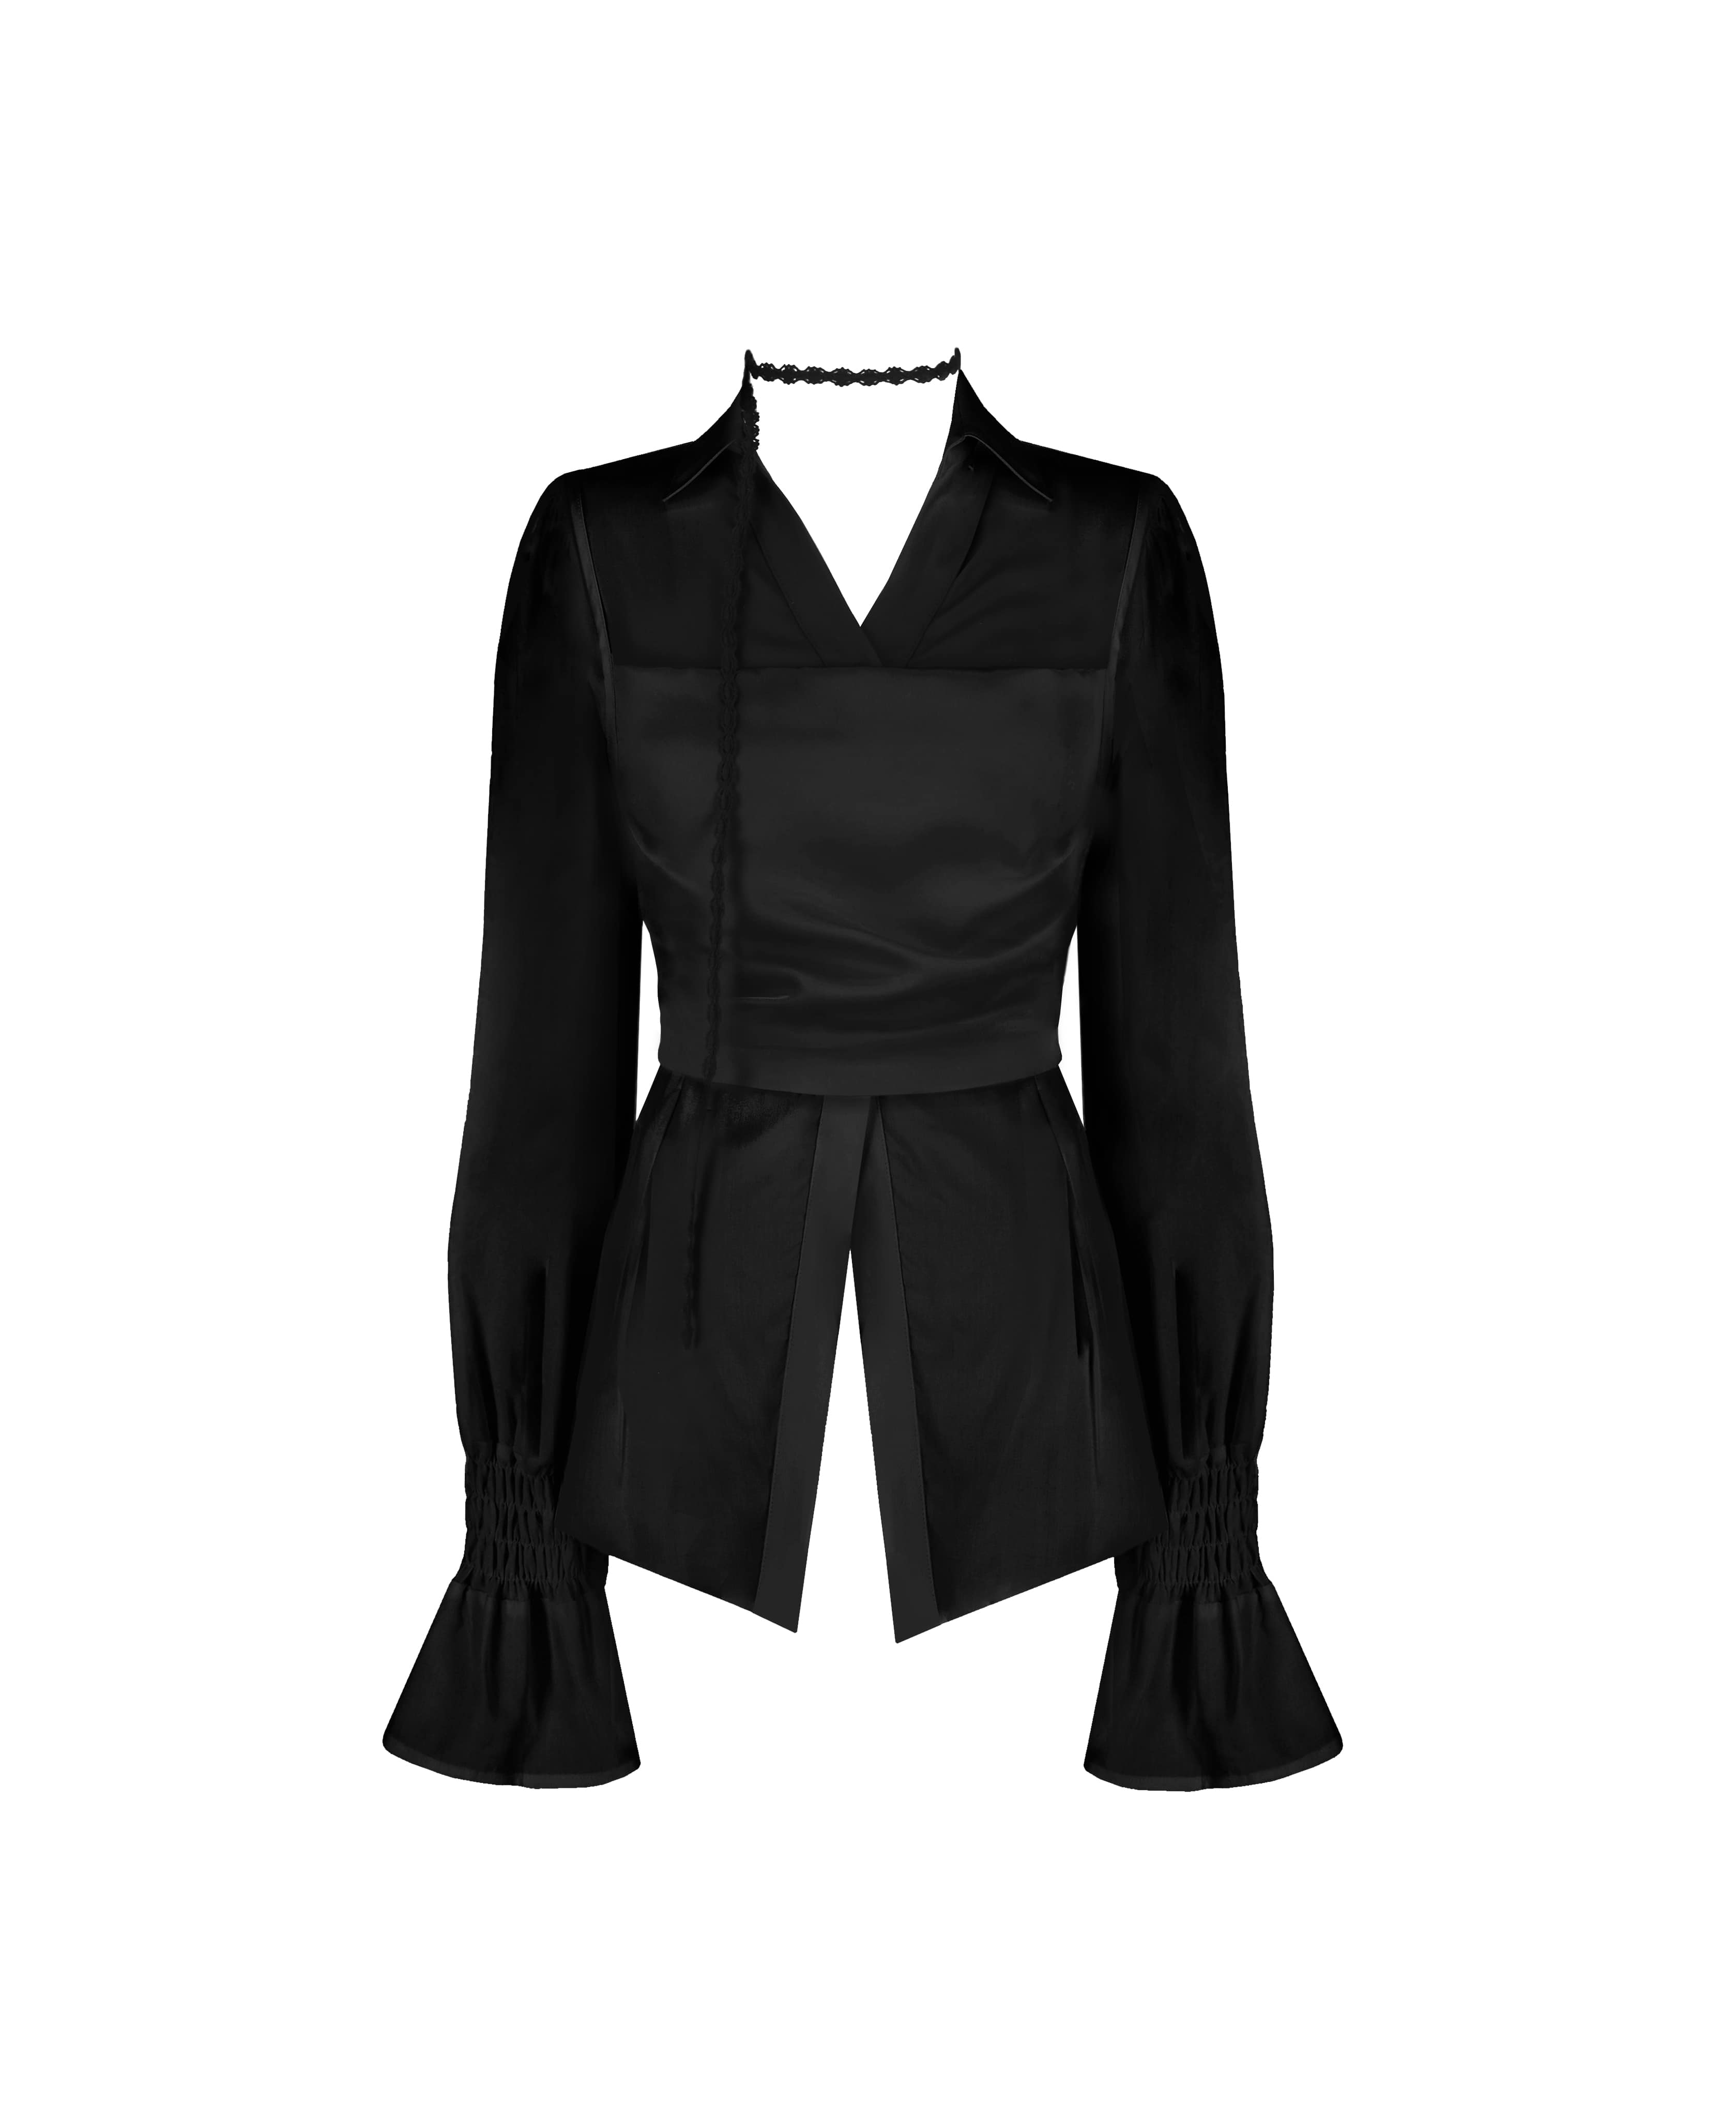 Soap blouse set + Delight satin skirt / Black